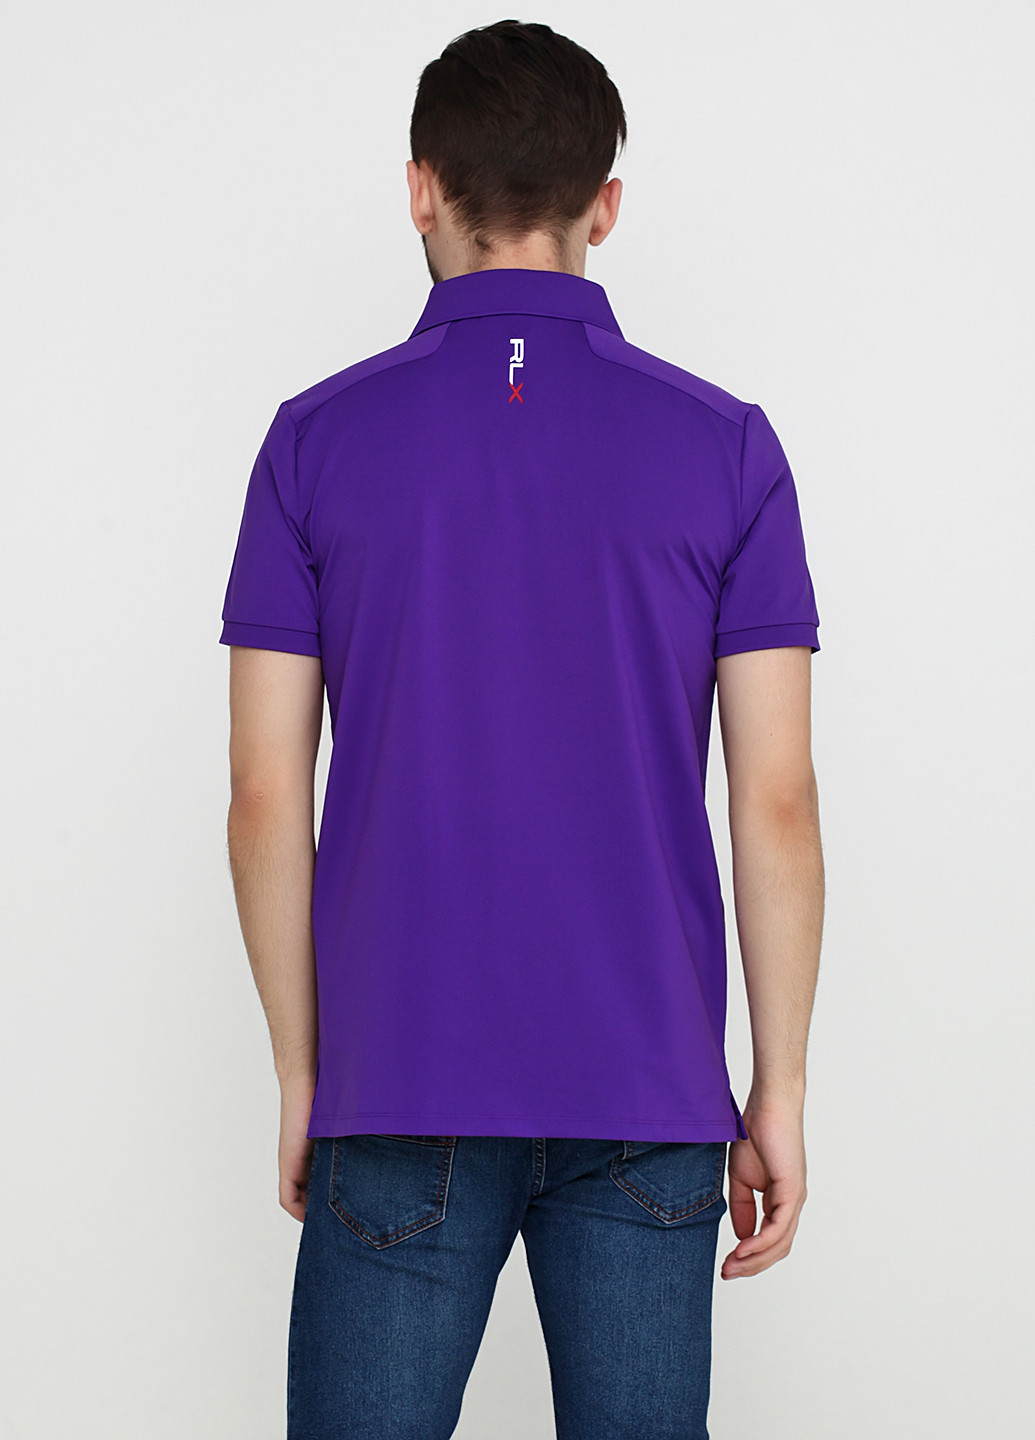 Фиолетовая футболка-поло для мужчин Ralph Lauren с логотипом